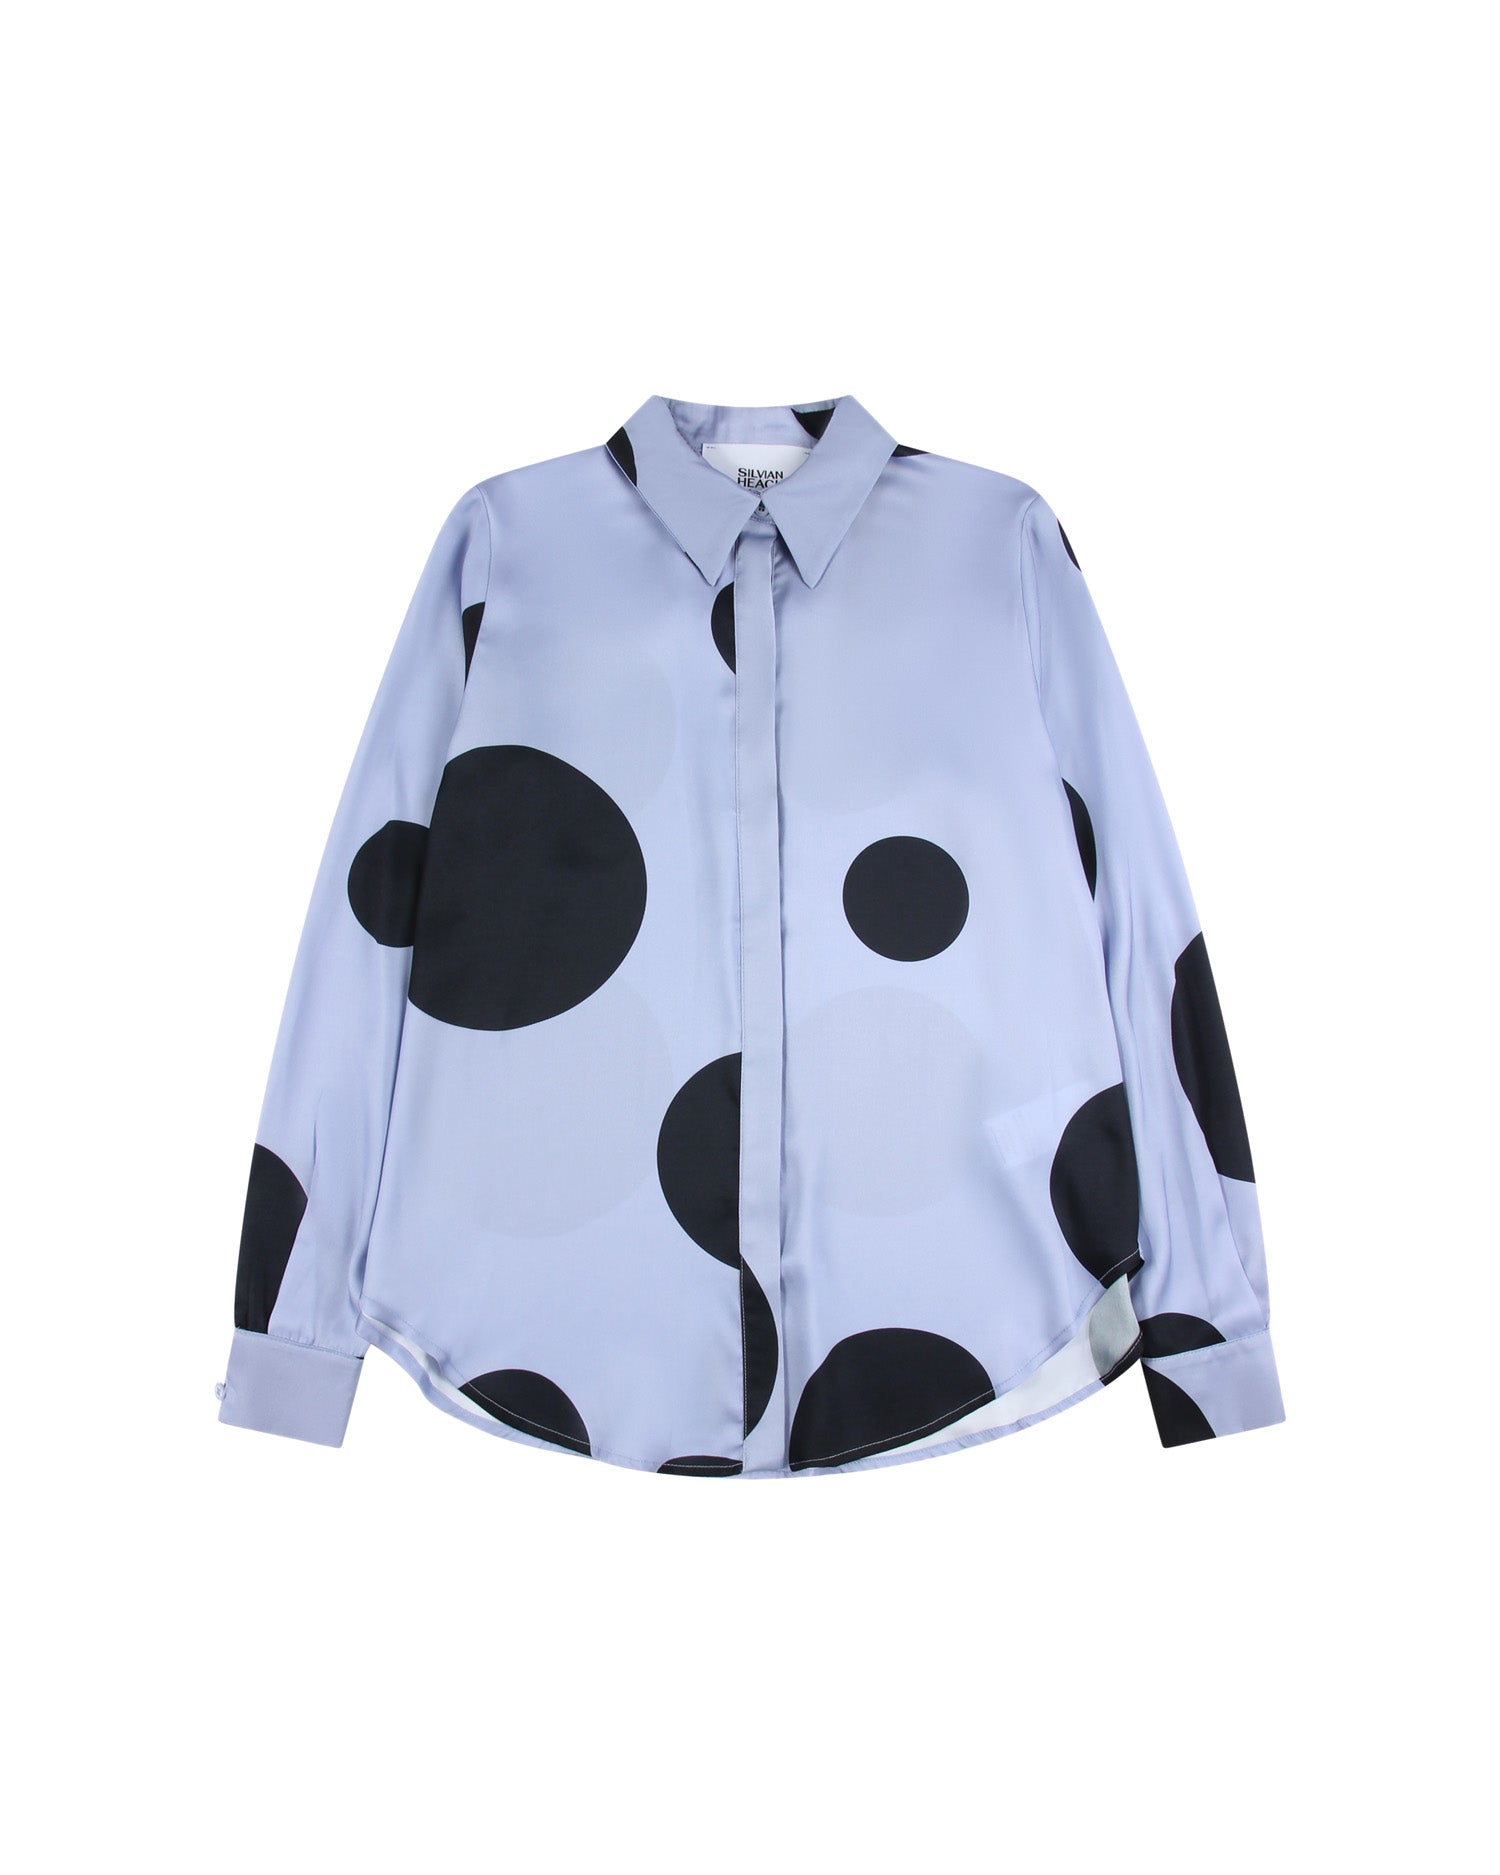 Shirt with macro polka dot pattern